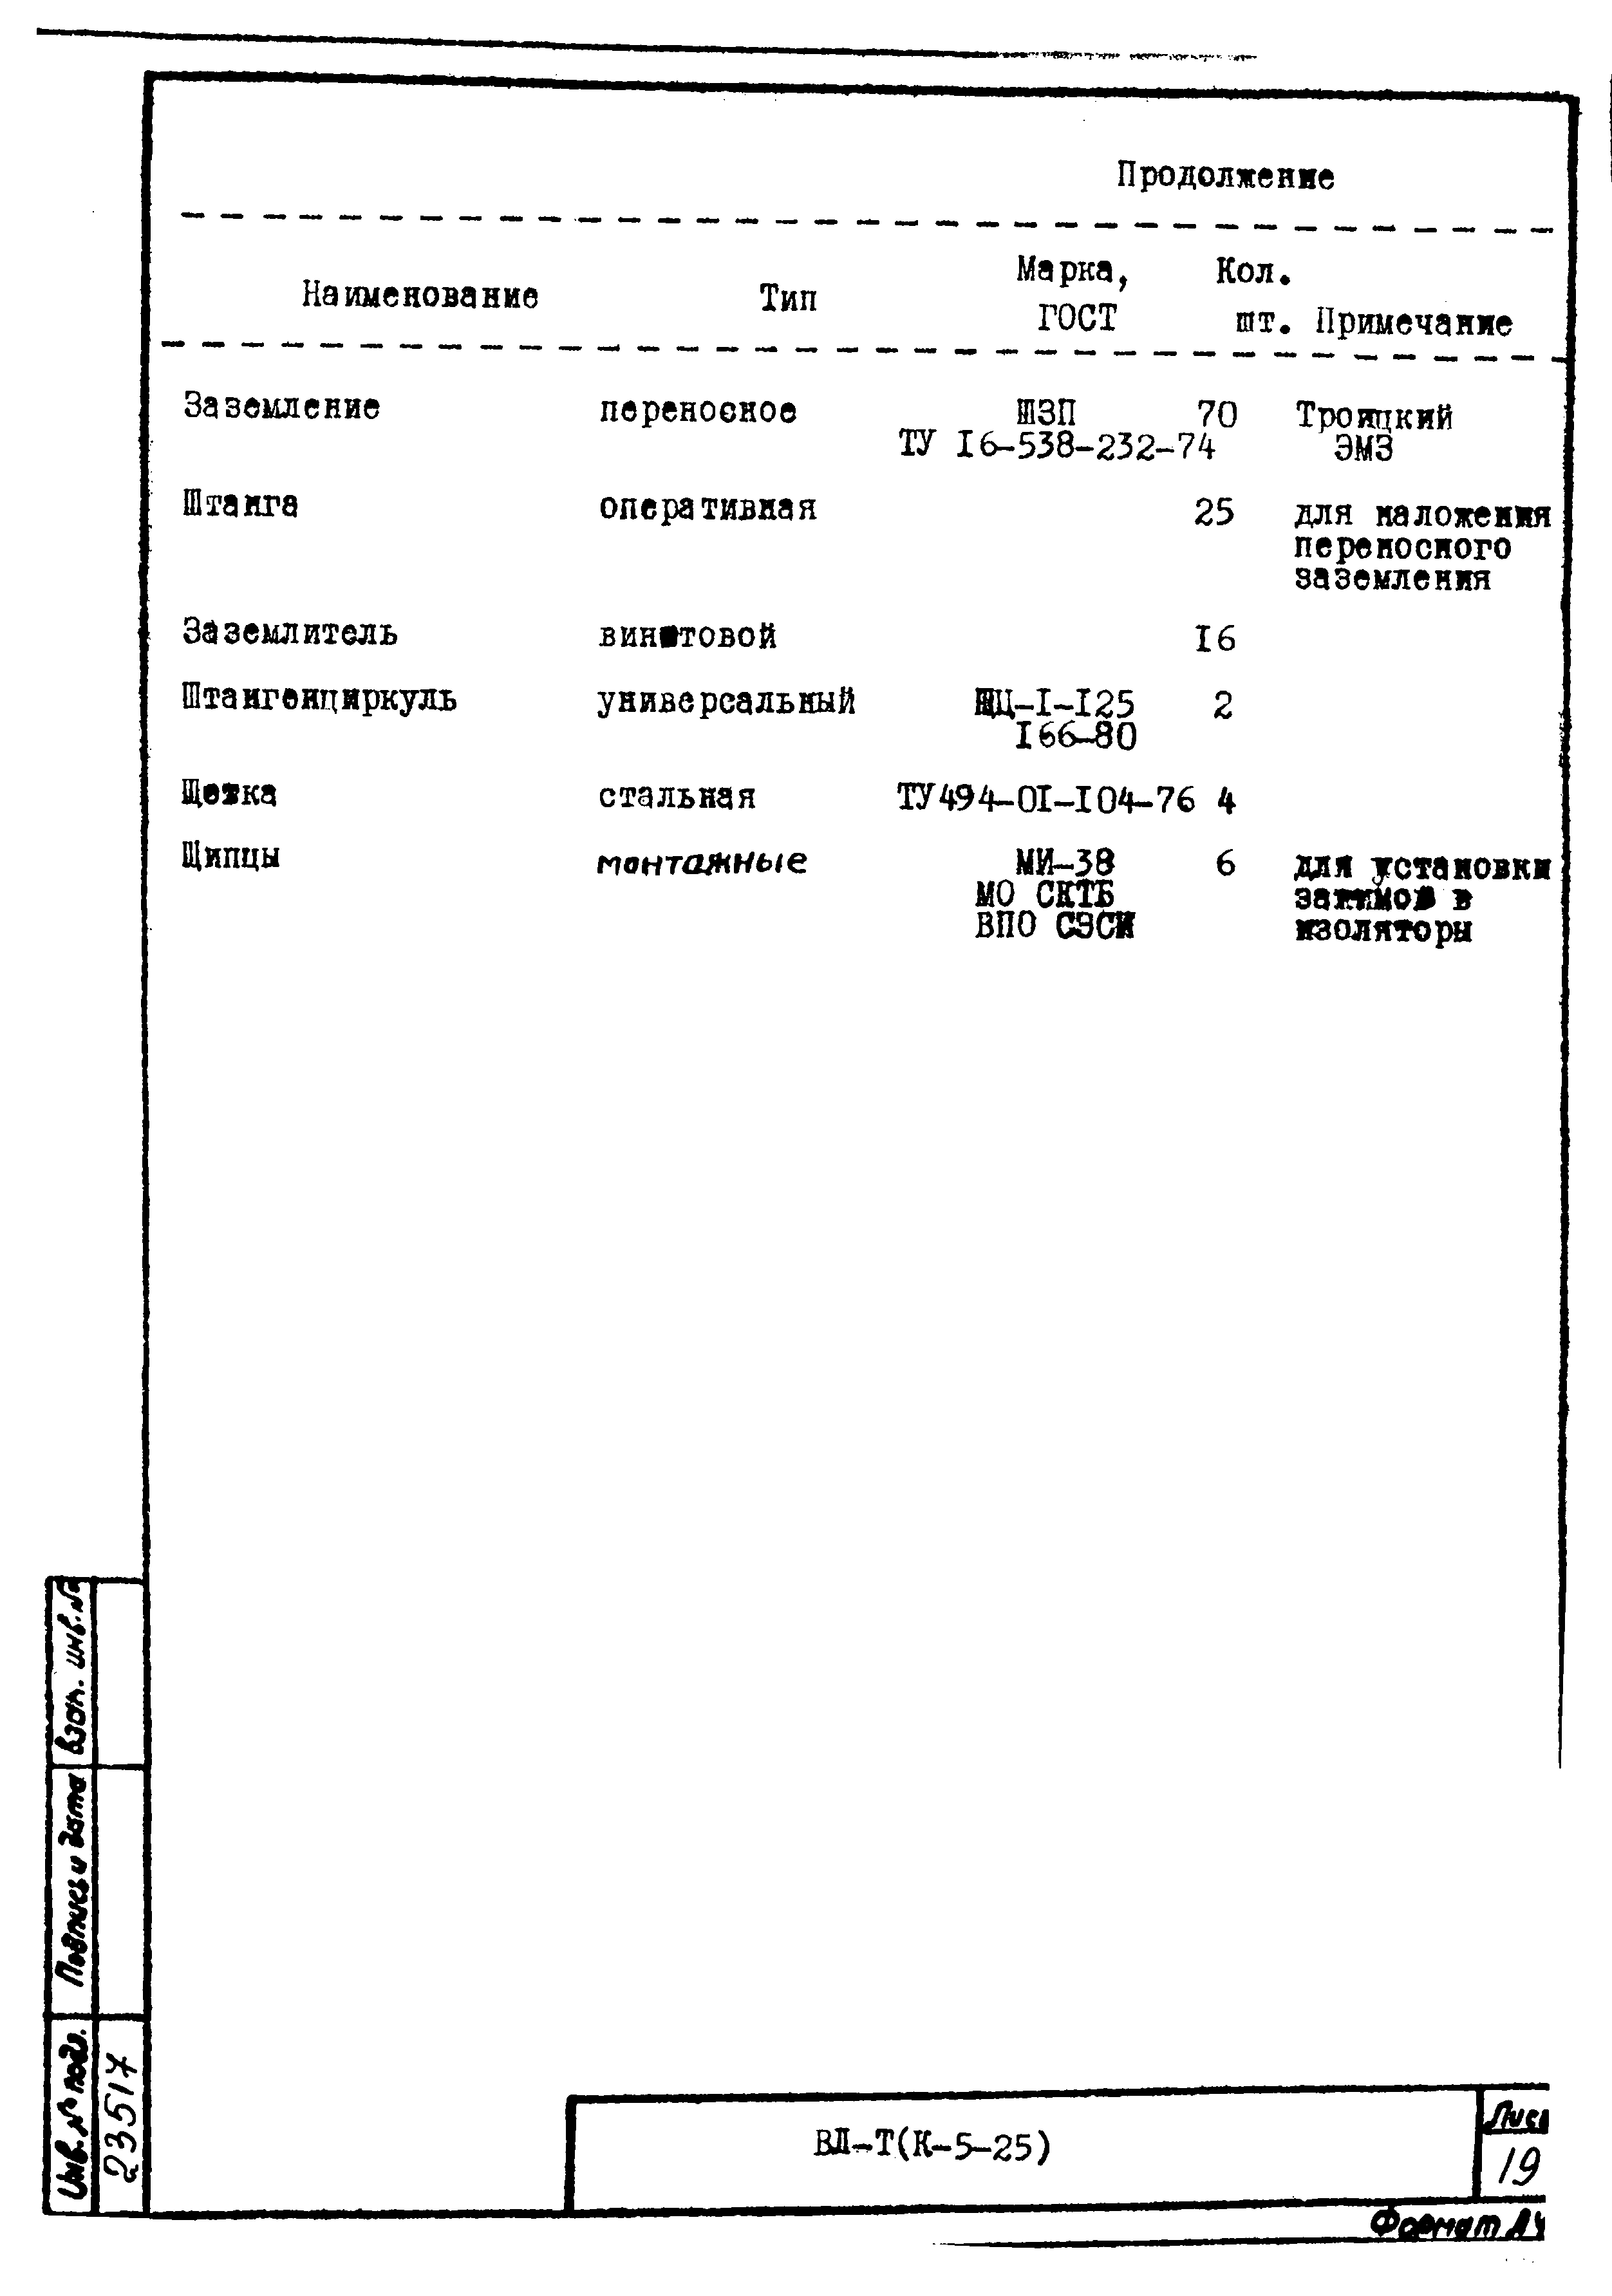 Технологическая карта К-5-25-27